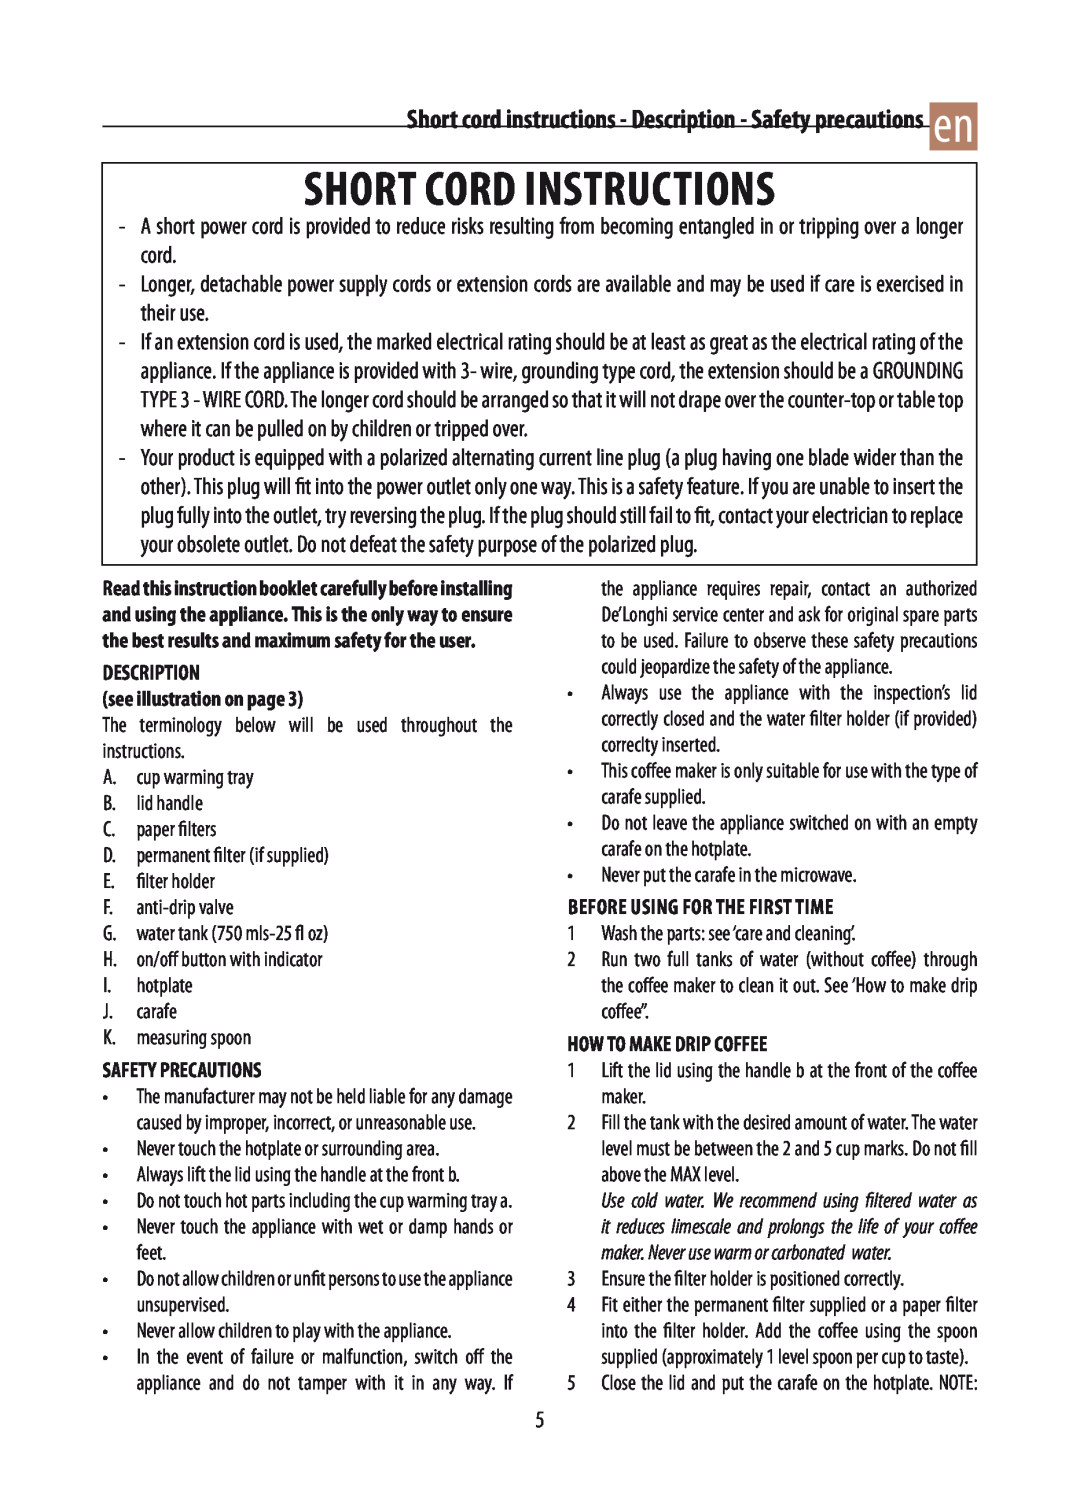 DeLonghi DCM02 manual short cord instructions, Short cord instructions - Description - Safety precautions en 